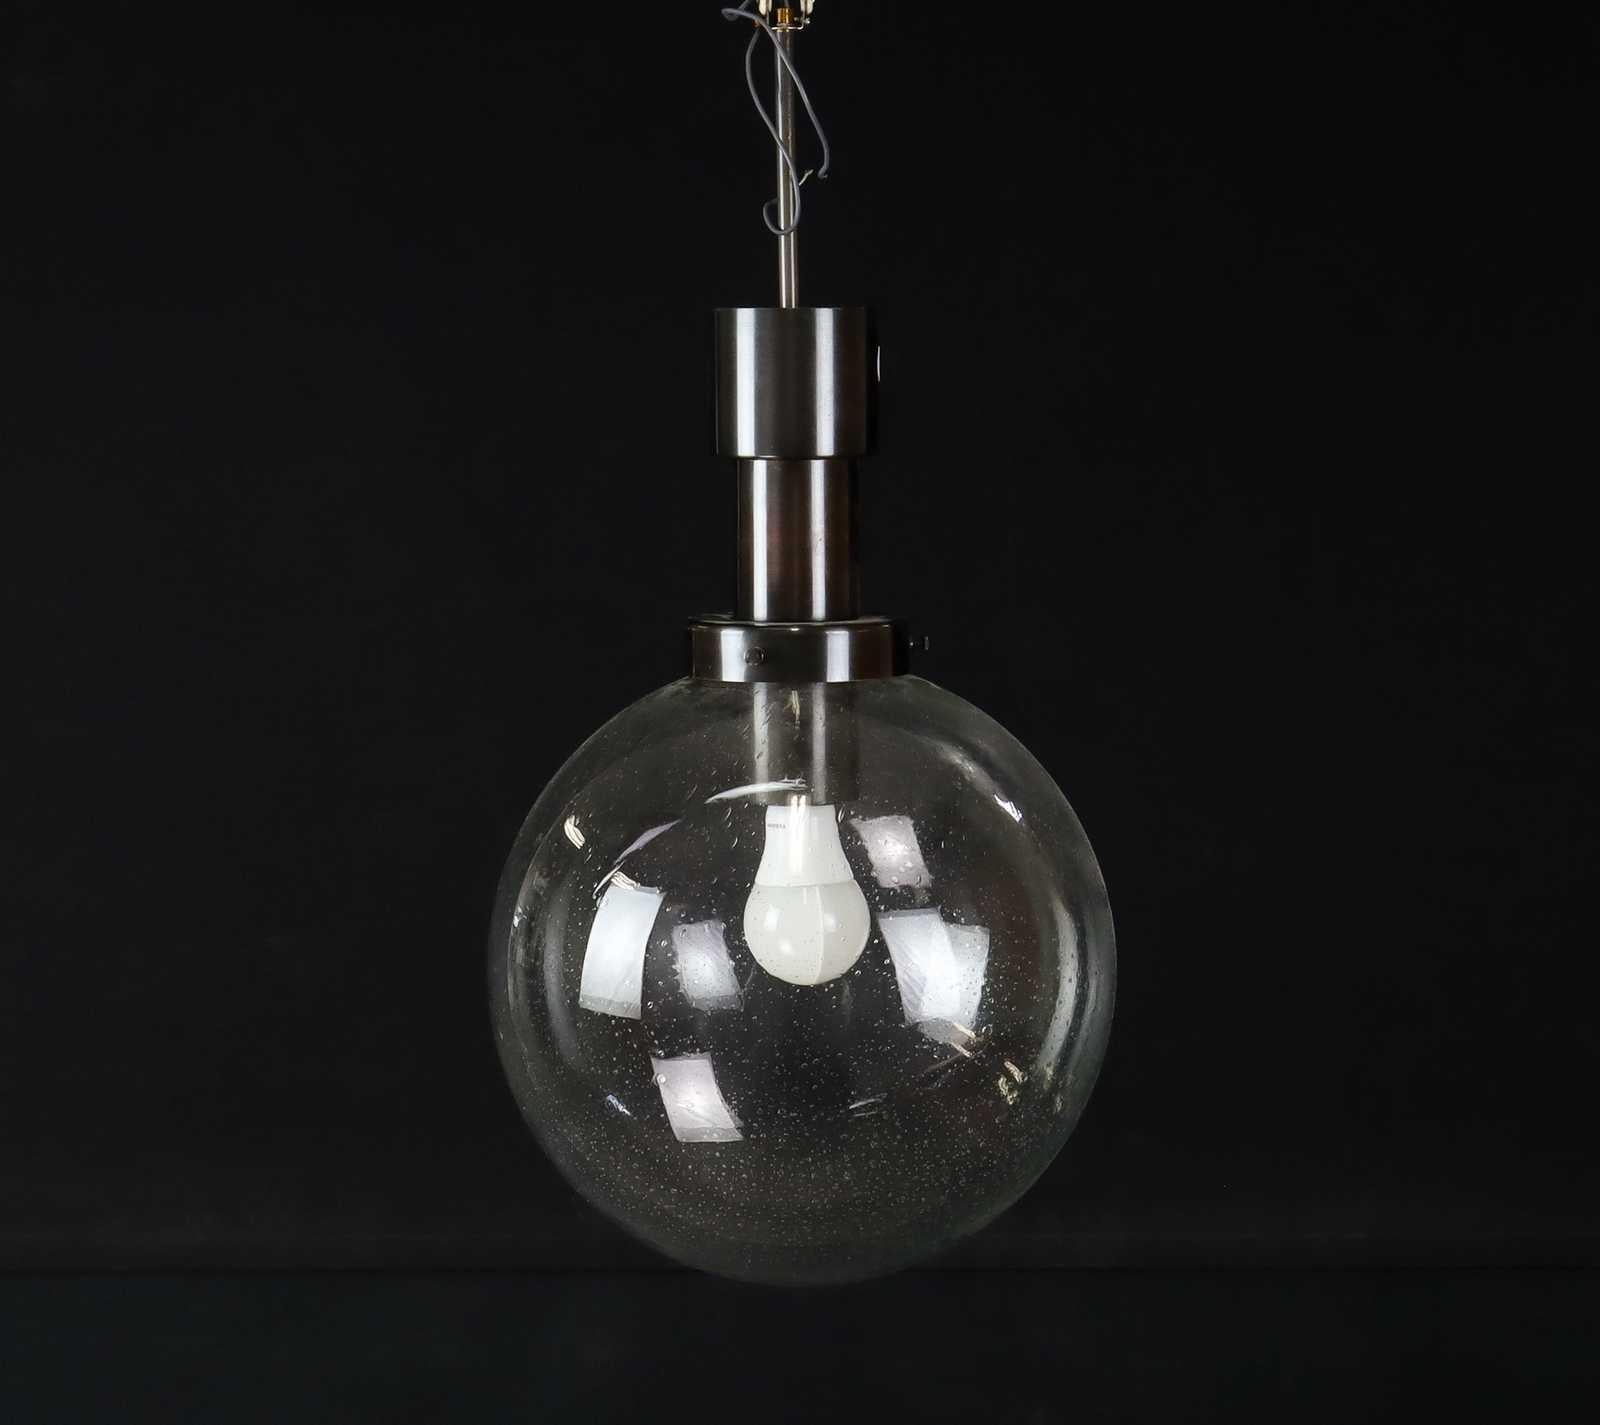 Exquise lampe suspendue fabriquée en Suède par Hans-Agne Agnes, Markaryd, en 1960. Ces lampes présentent une tige allongée en laiton bronzé, qui s'étend pour se connecter à l'élément en verre transparent large et généreusement incurvé. Le verre peut